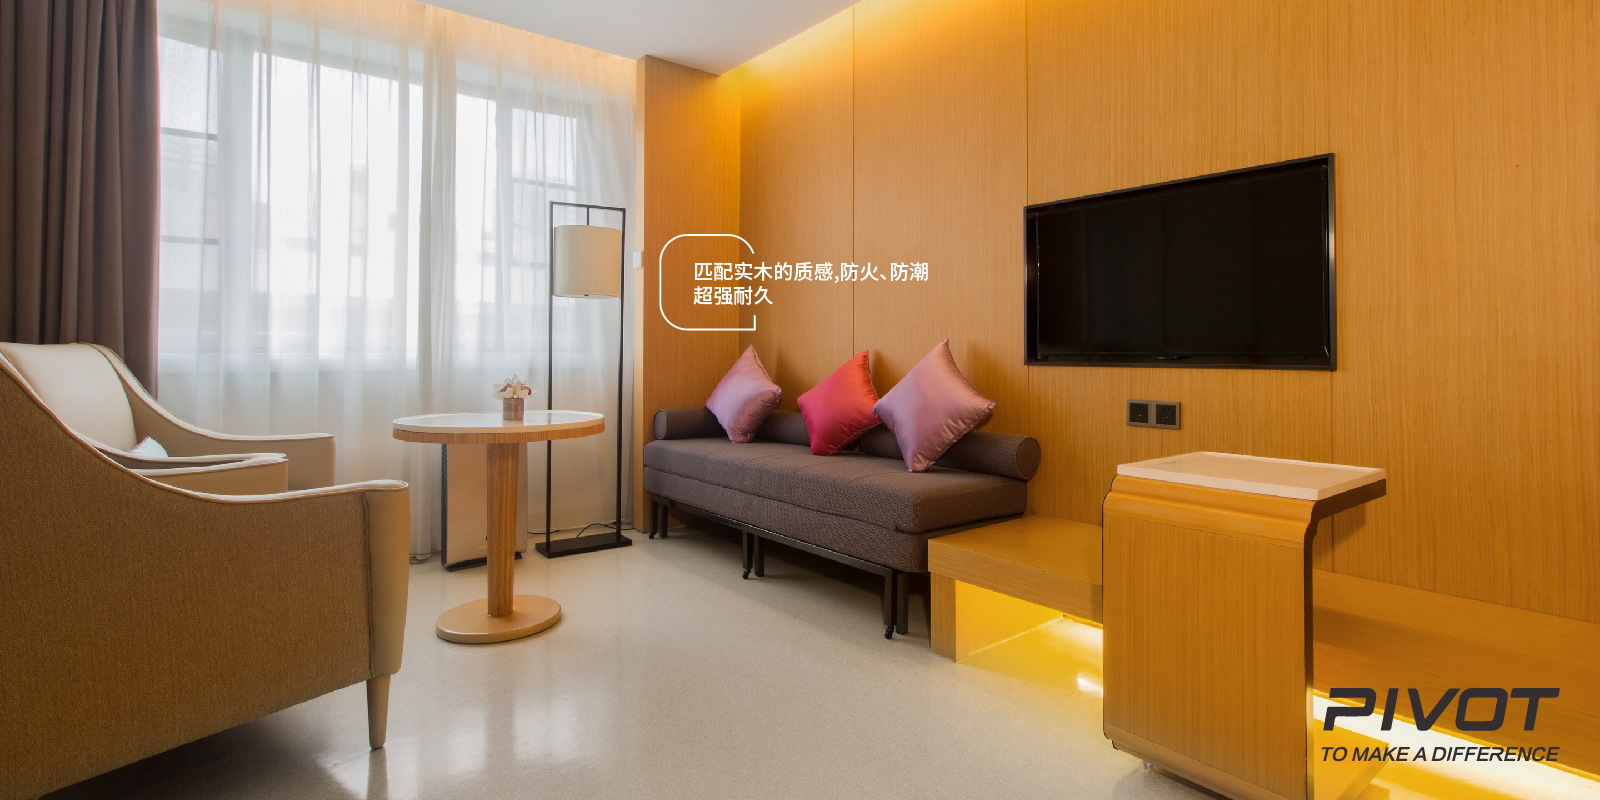 2015-广州-爱博恩医院-04.jpg